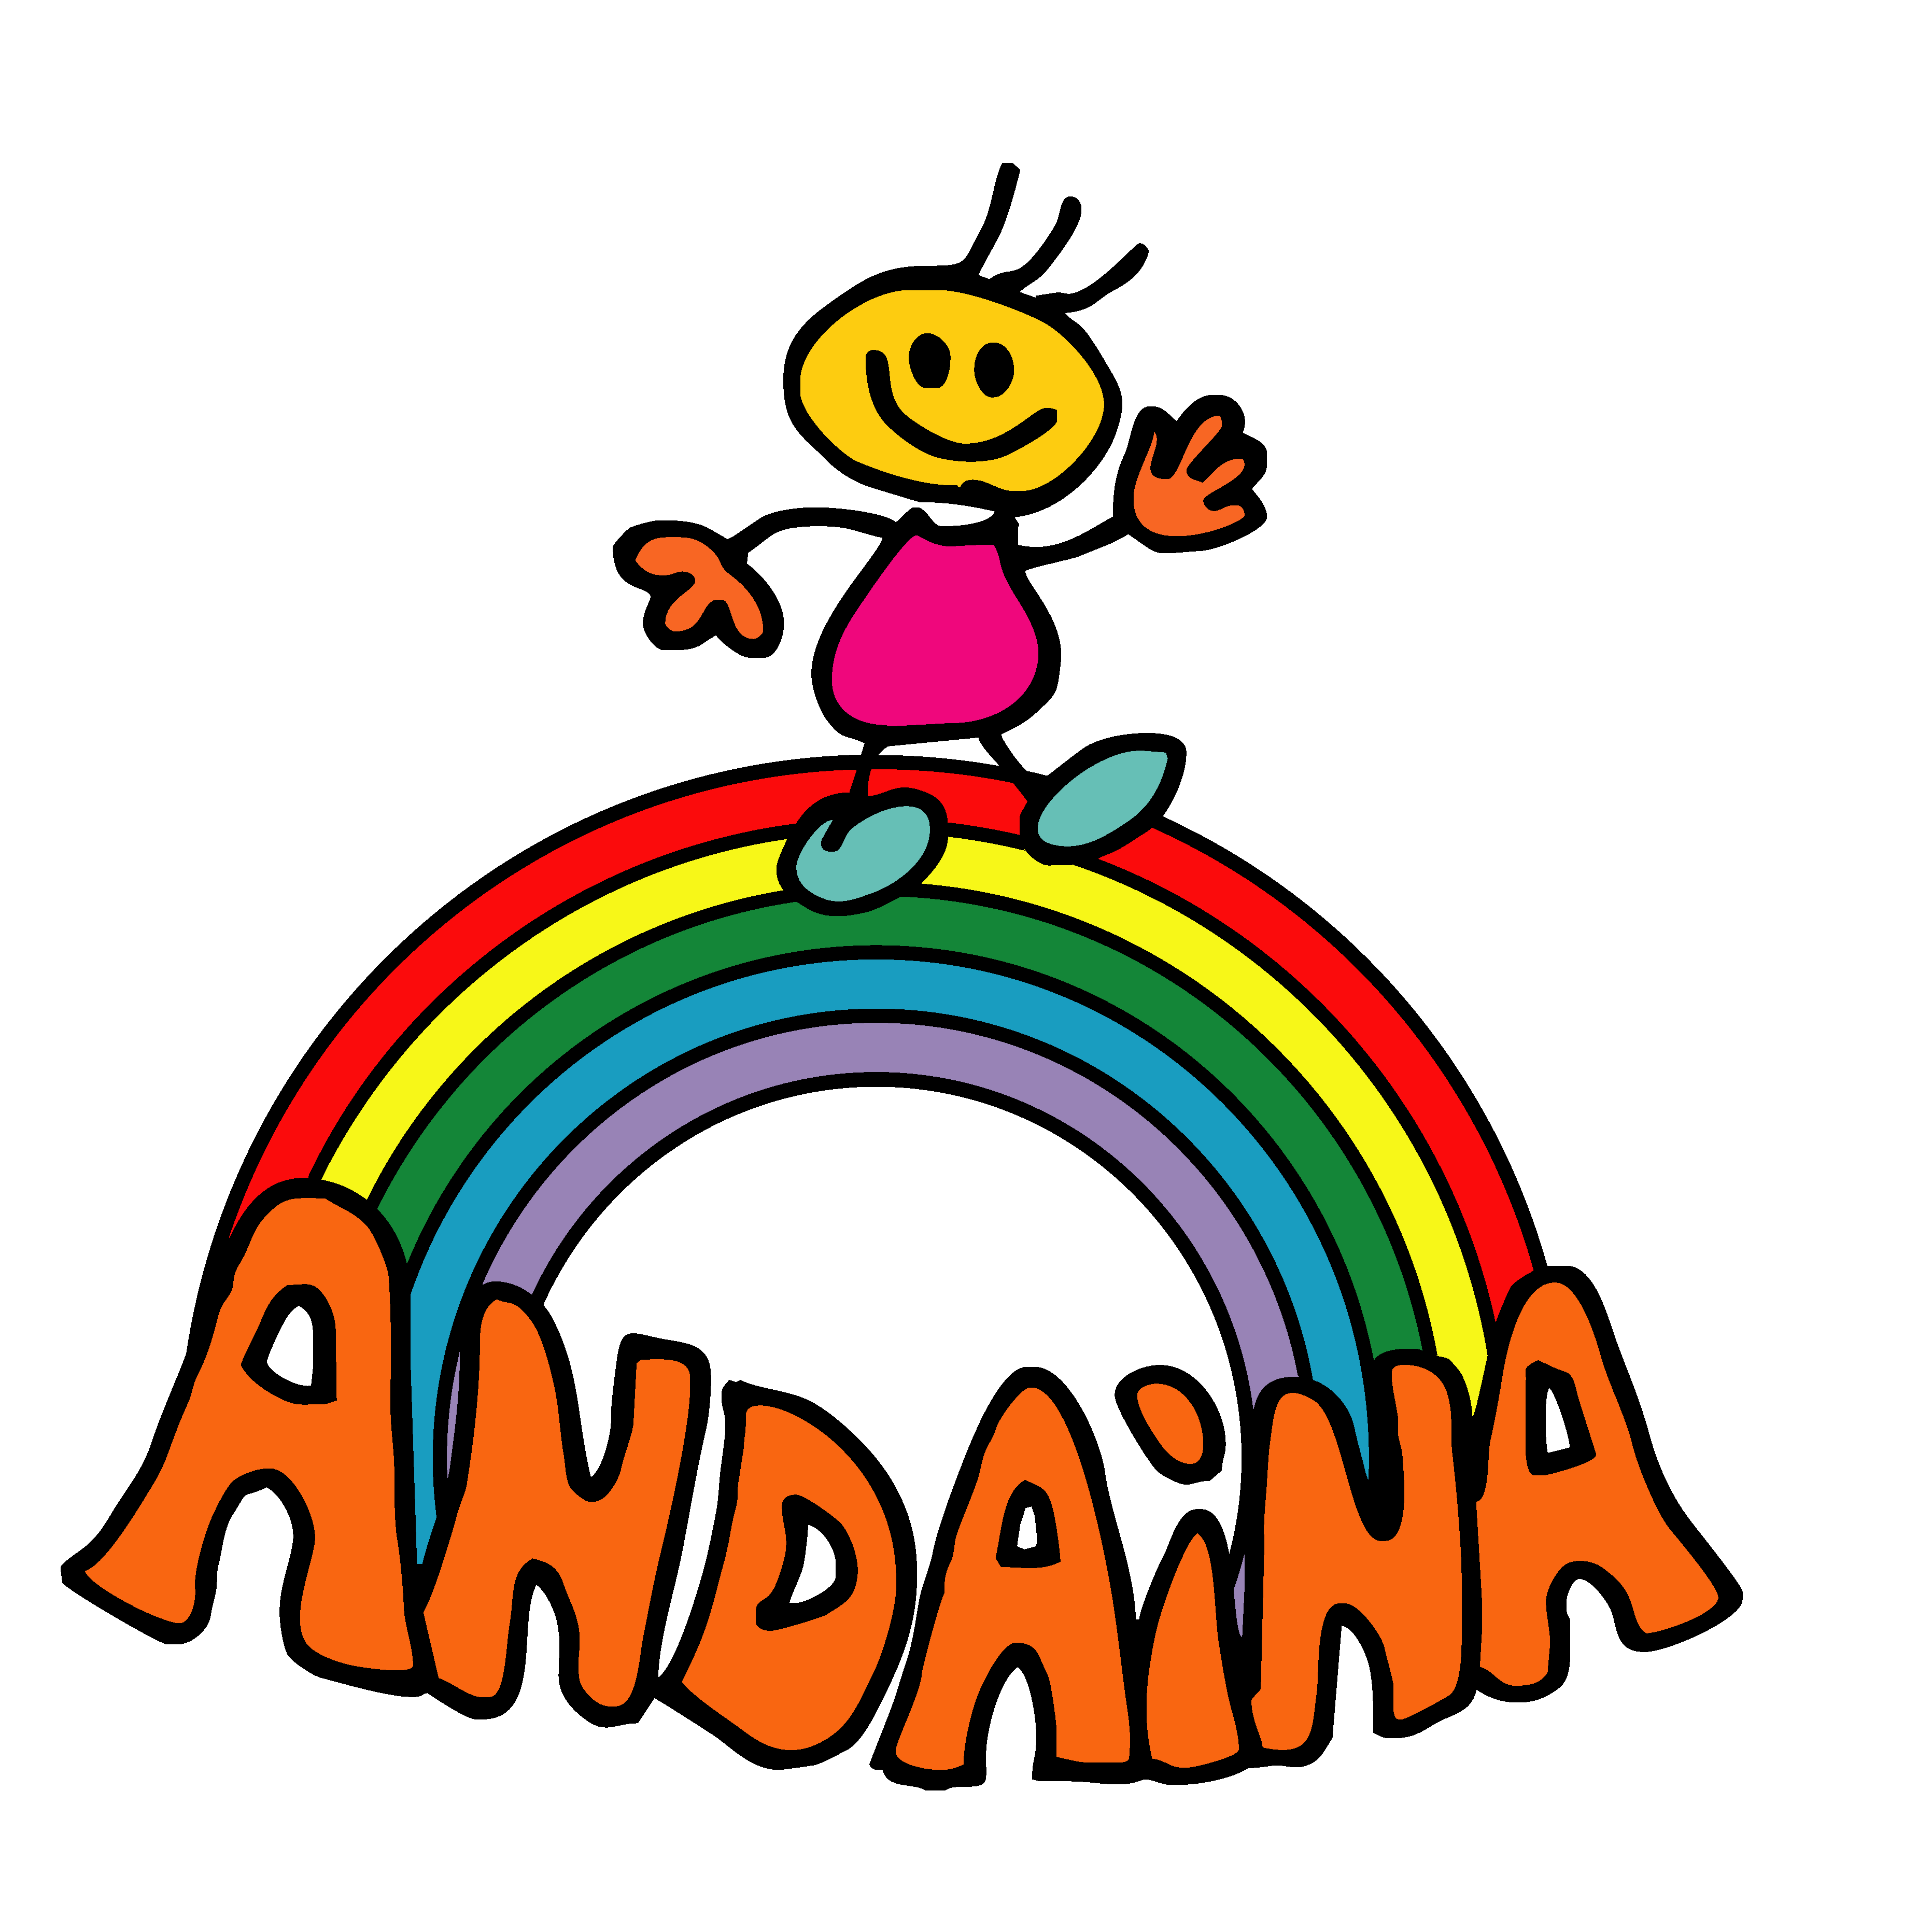 Asociación Andaina de persoas con diversidade funcional de Redondela - El teu perfil. Vota, valora i comunica’t